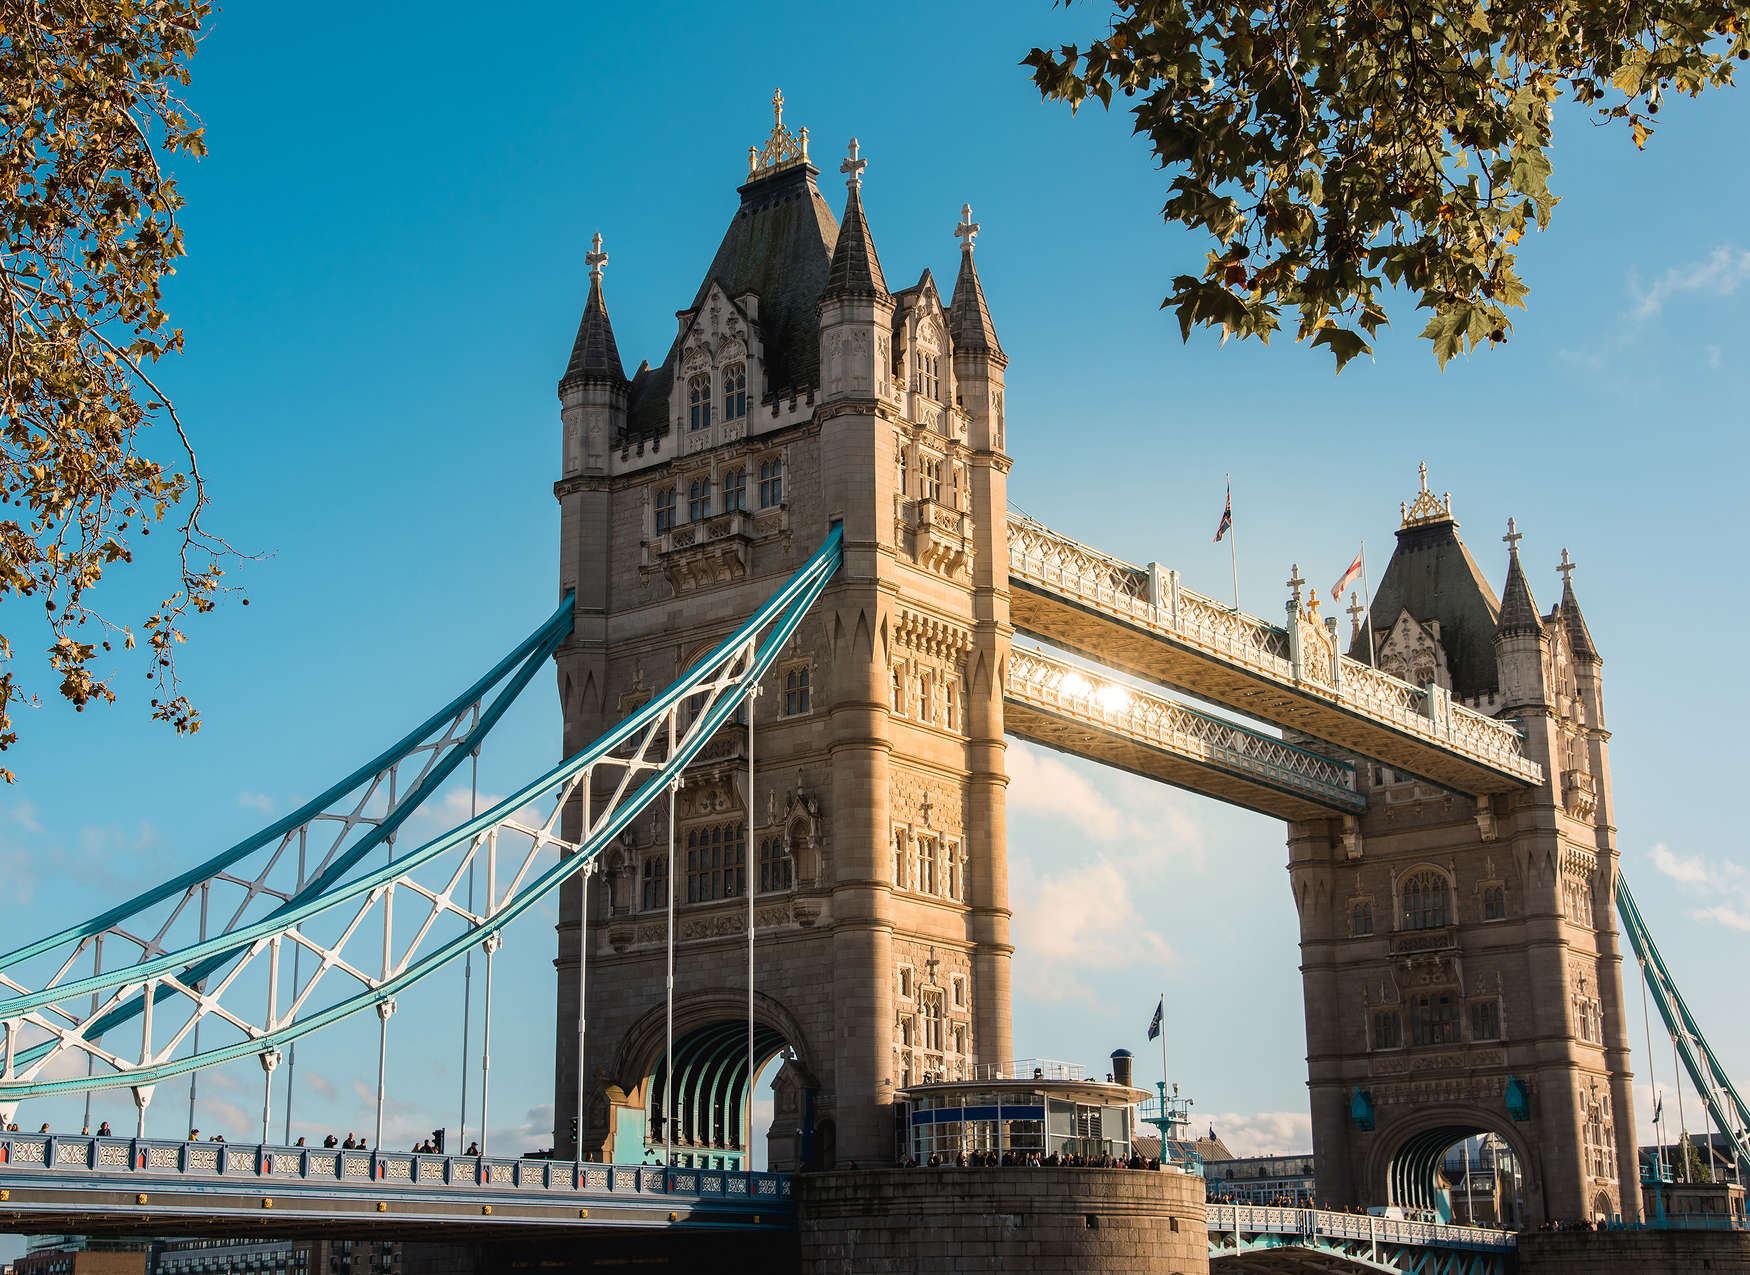             Fototapete mit London Bridge bei sonnigem Wetter – Blau, Beige
        